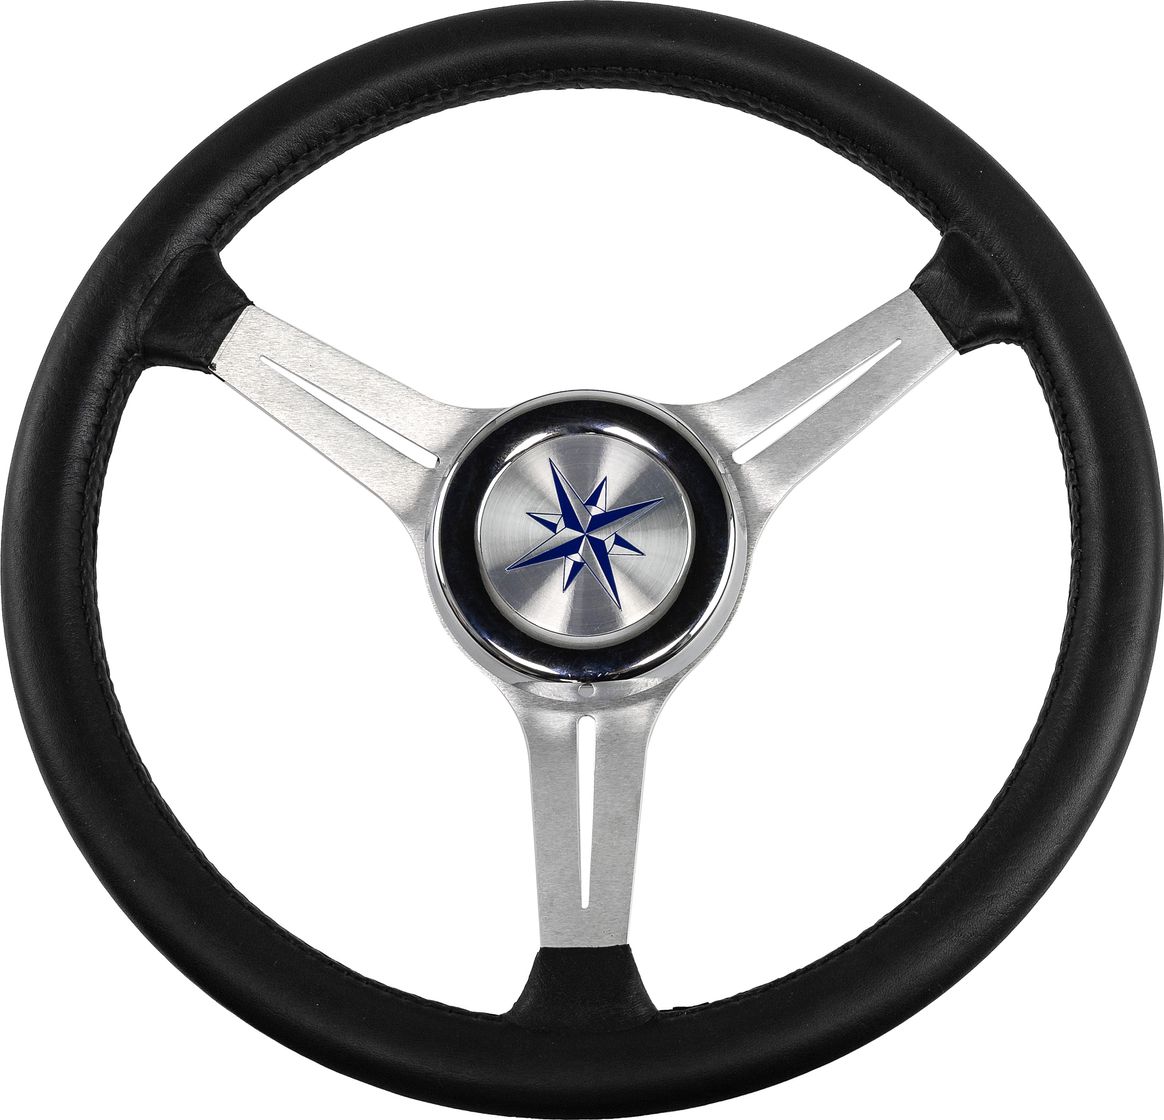 Рулевое колесо LYRA обод черный, спицы серебряные д. 370 мм VN137003-01 рулевое колесо orion обод спицы серебряные д 355 мм vn960101 01